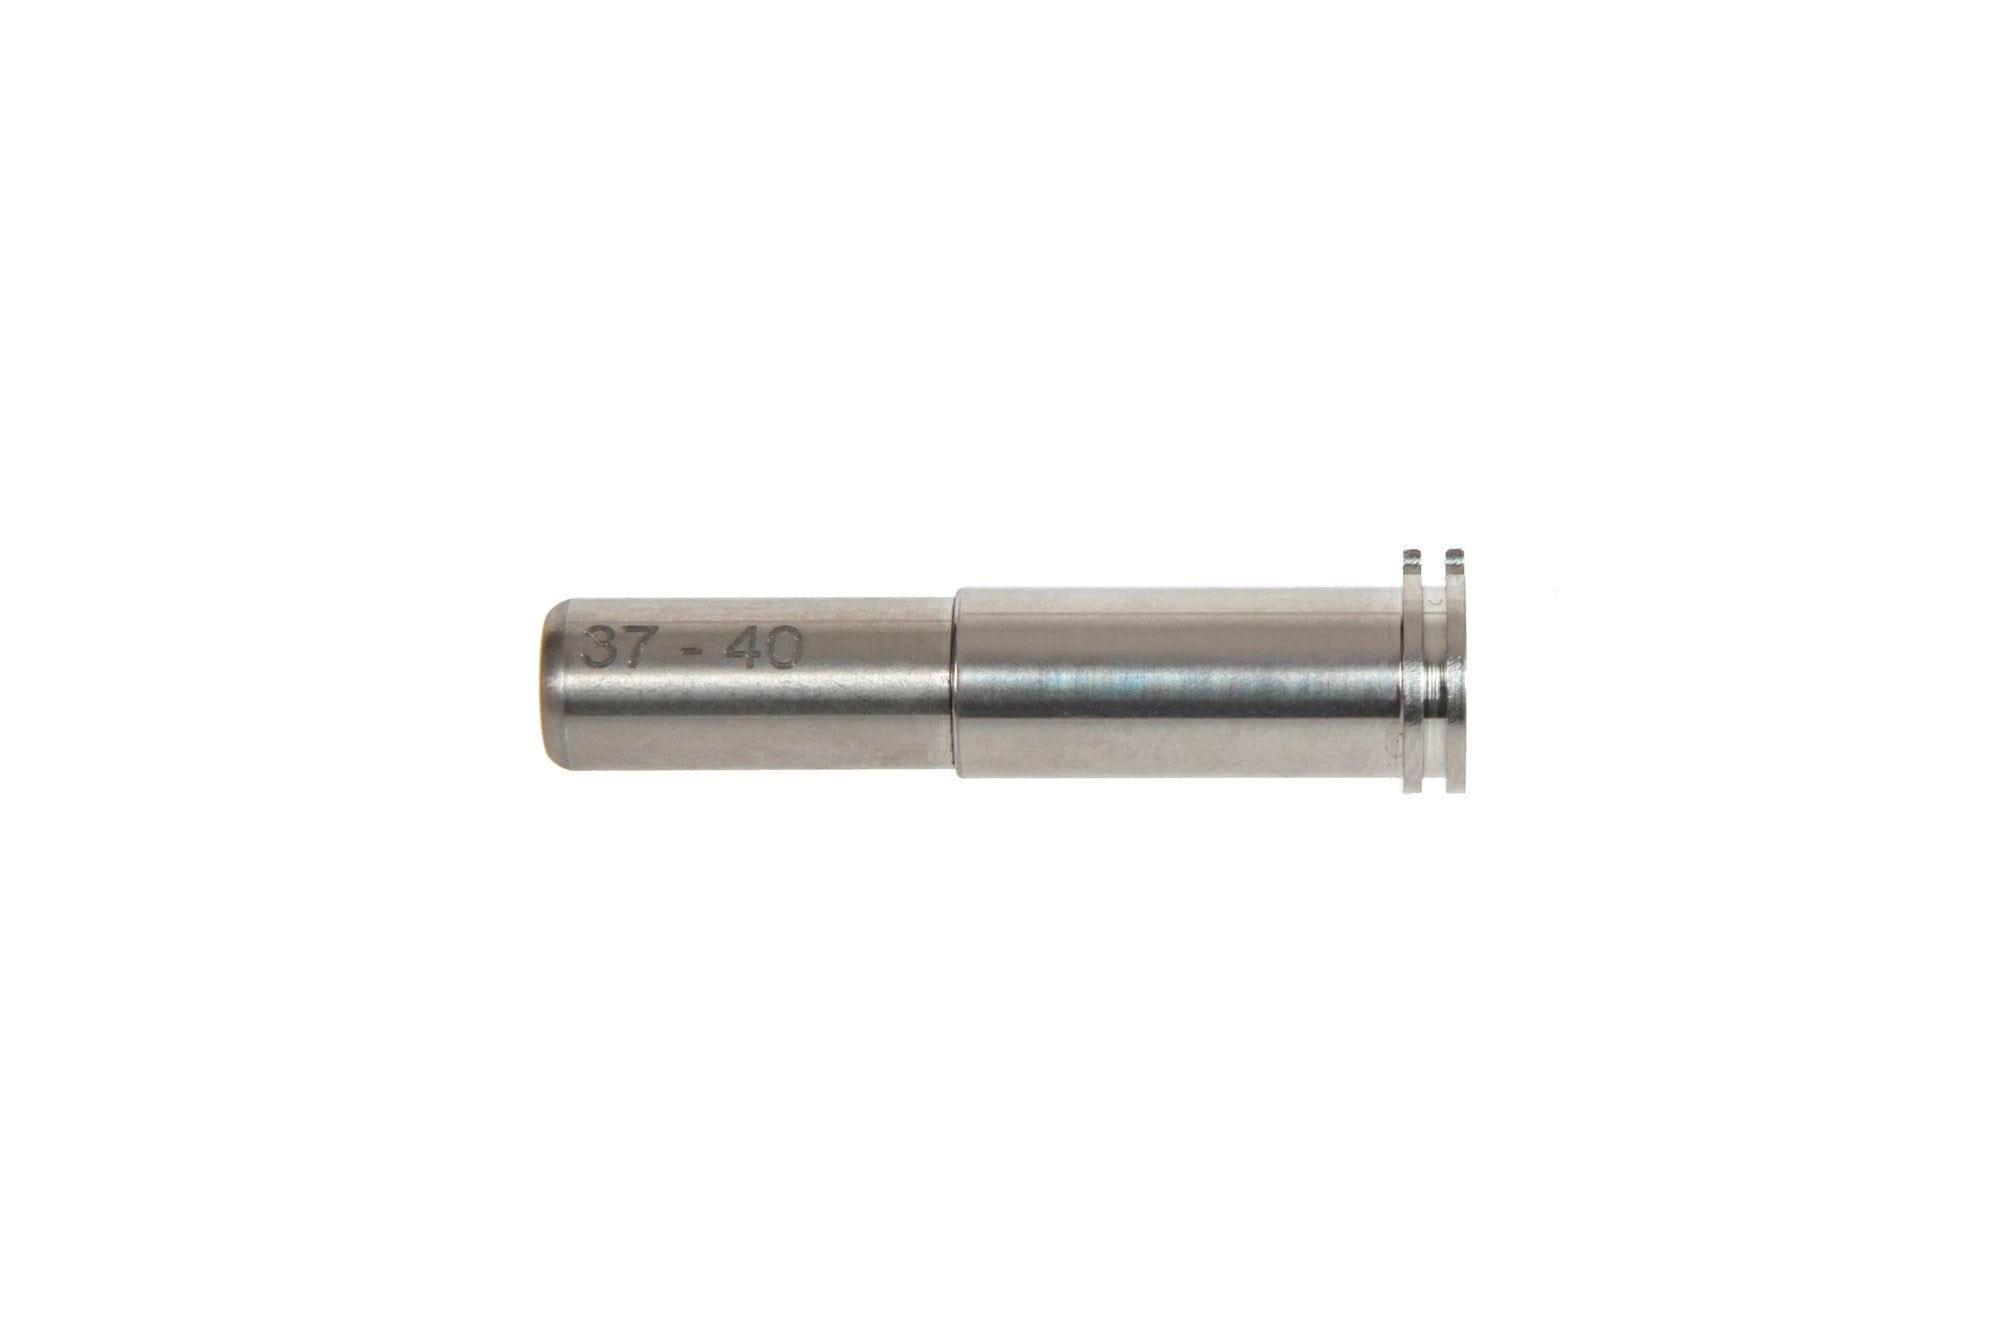 Verstelbaar titanium mondstuk - 37 mm tot 40 mm